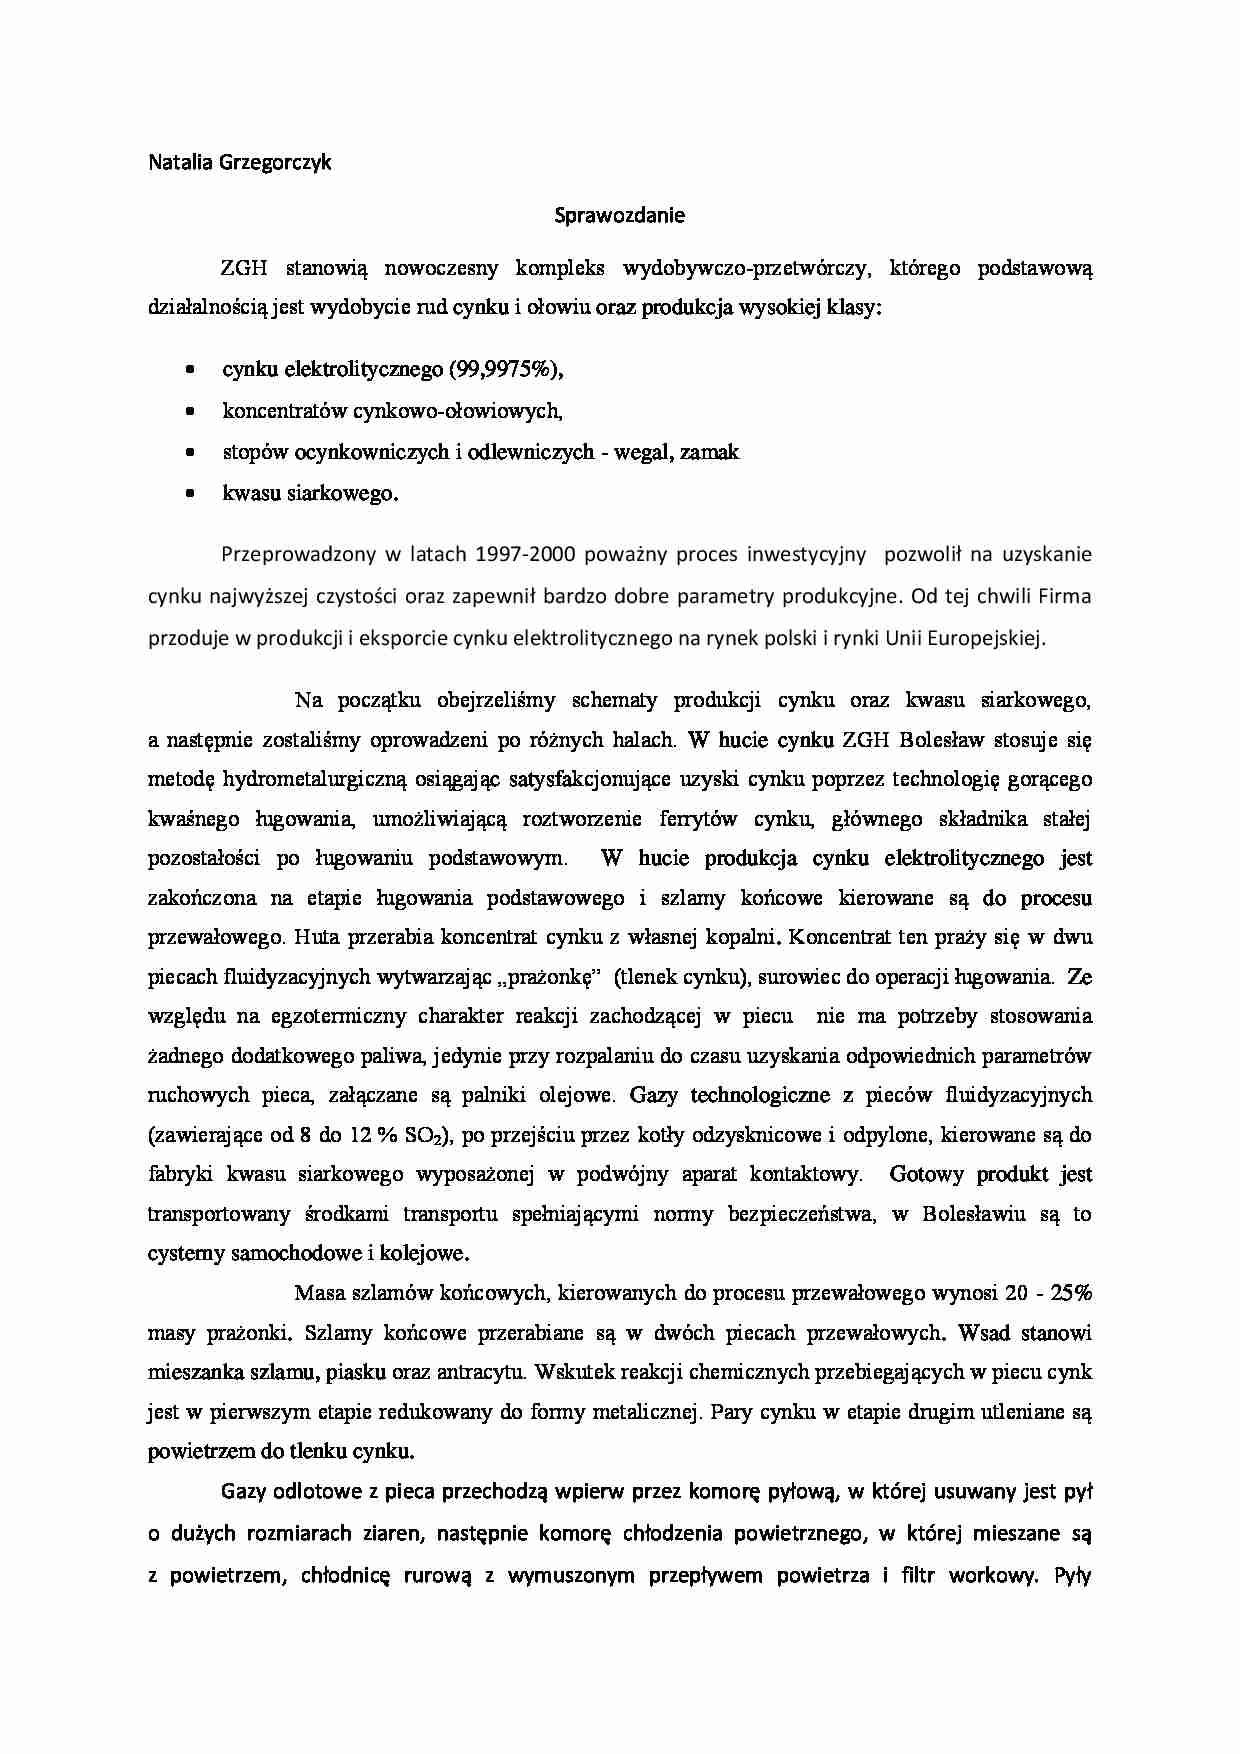 ZGH Bolesław - sprawozdanie - strona 1